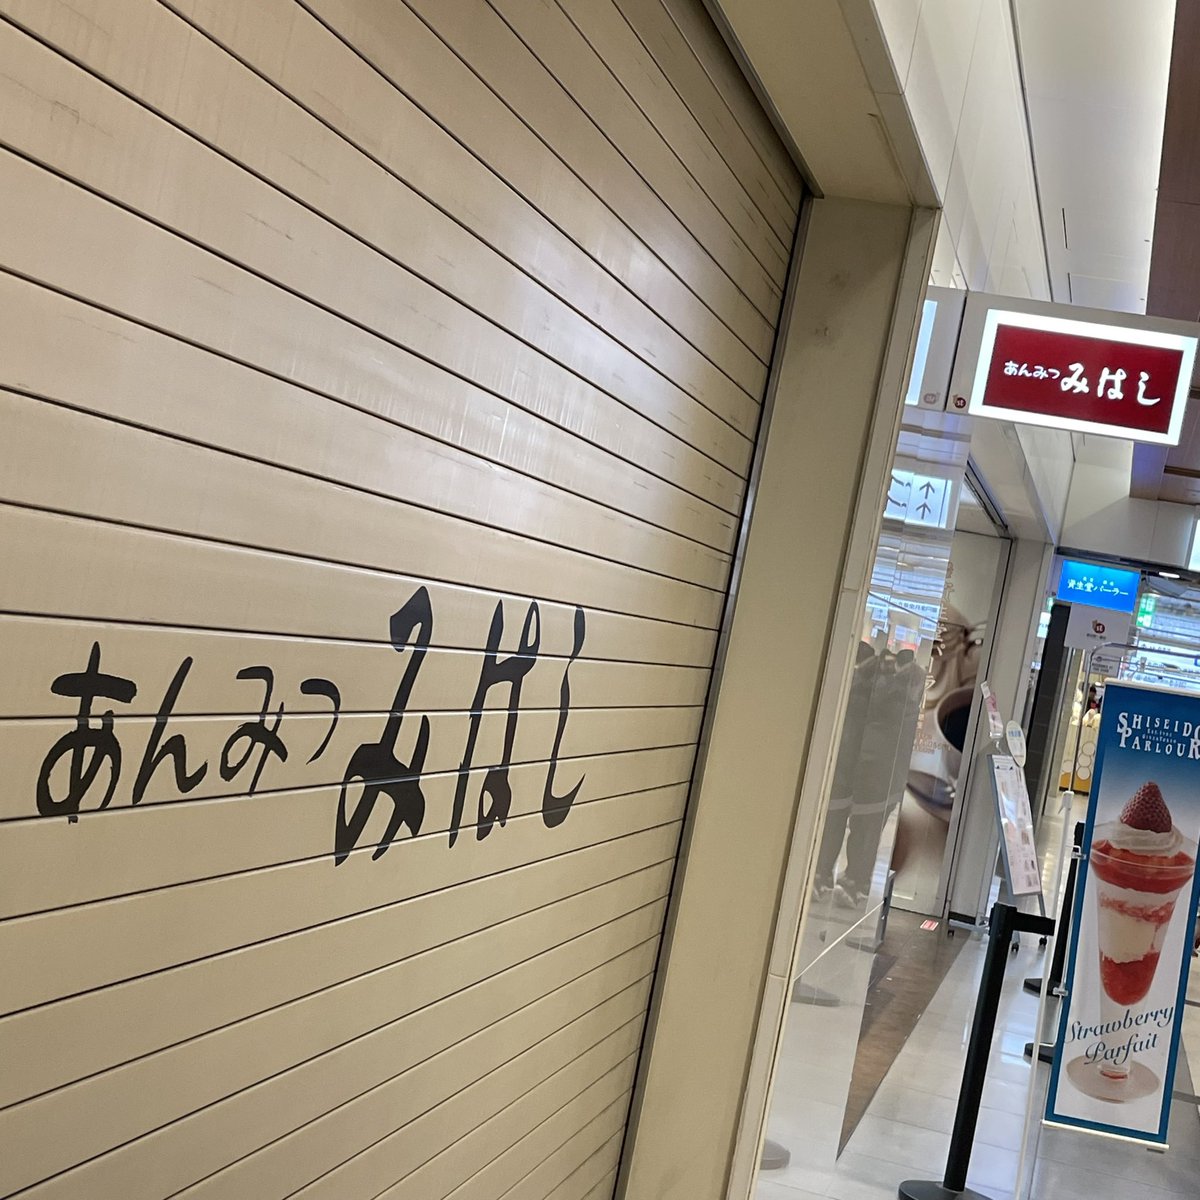 北千住から東京駅に移動してちいかわステッカーGET
コンプです！笑

PRONTO ミルクコーヒー
あんみつみはし 栗クリームあんみつ

みはしはPPでした！笑
ミルクコーヒーはブラックにミルクかと思ったらめちゃ甘でした

東京上野ライン今更ですが便利ですね！

美味しかったです